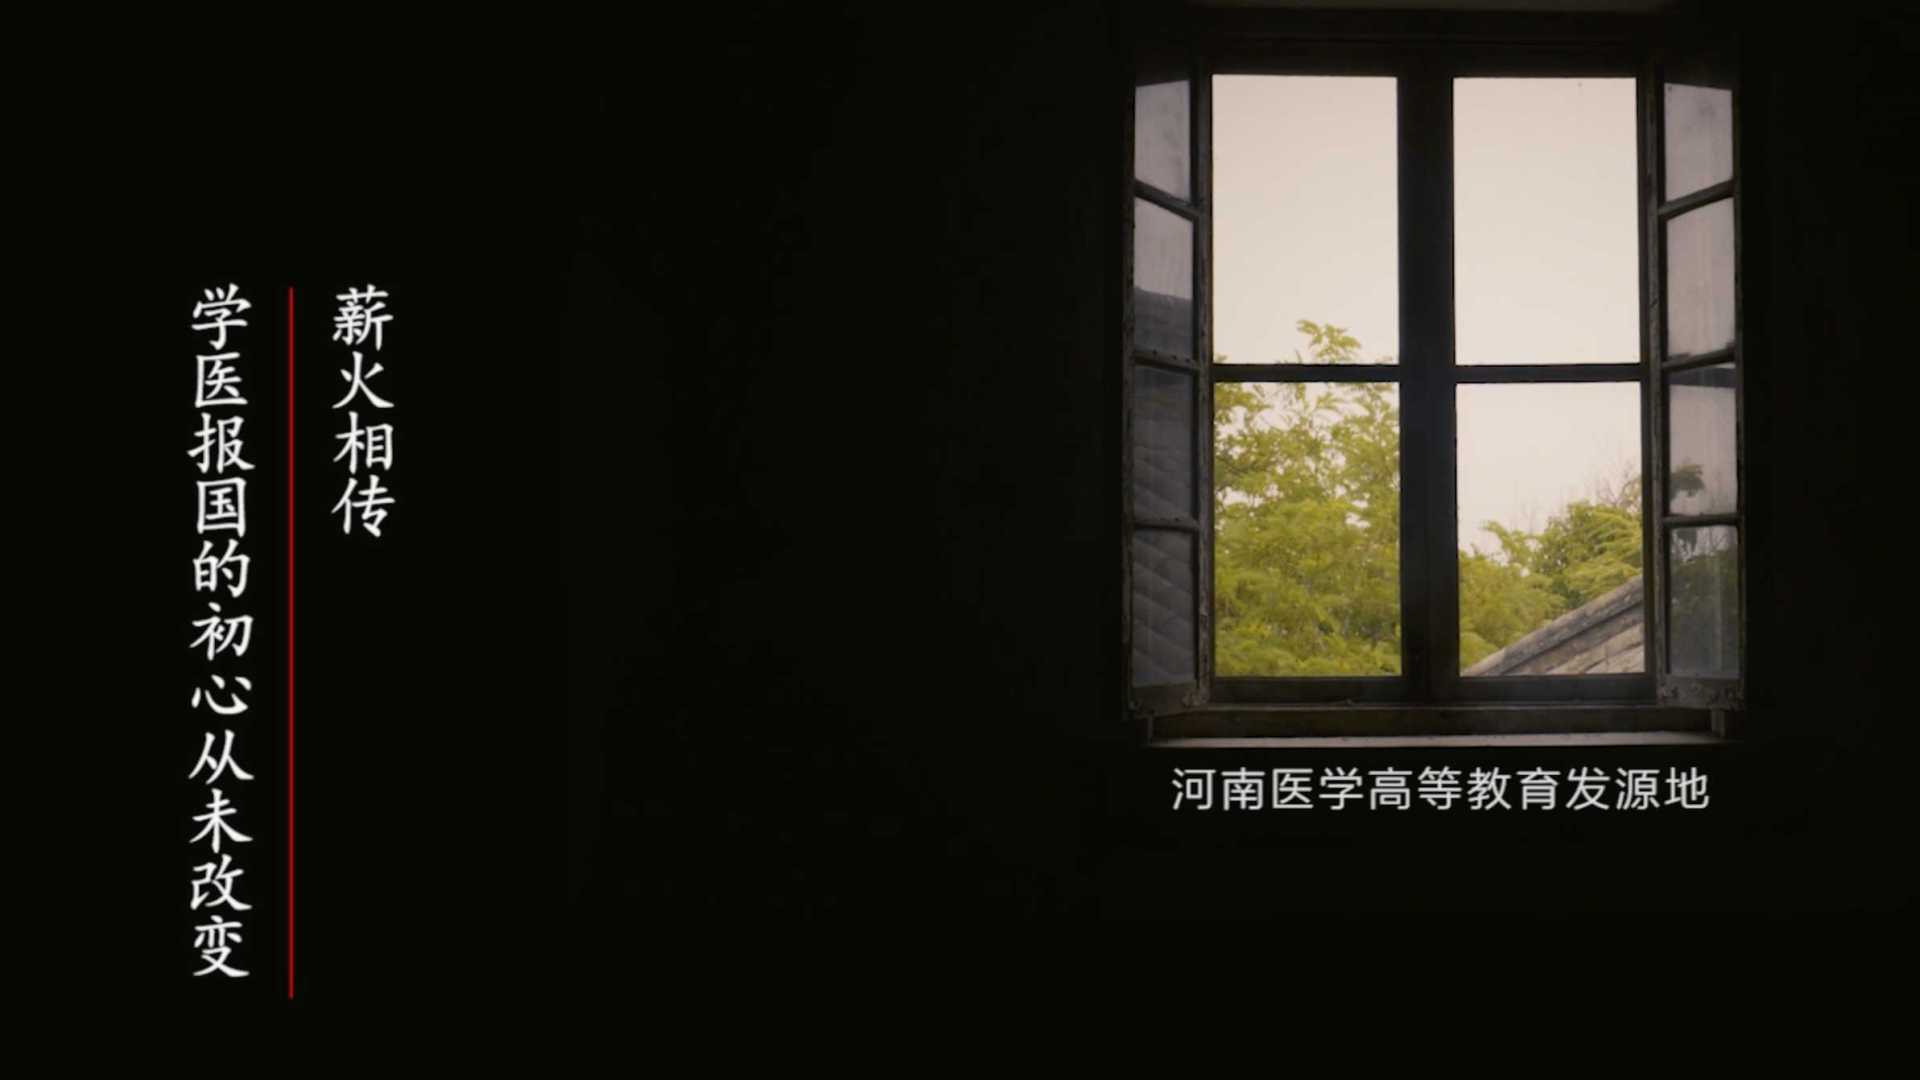 《传承医者初心》河南大学医学院宣传片